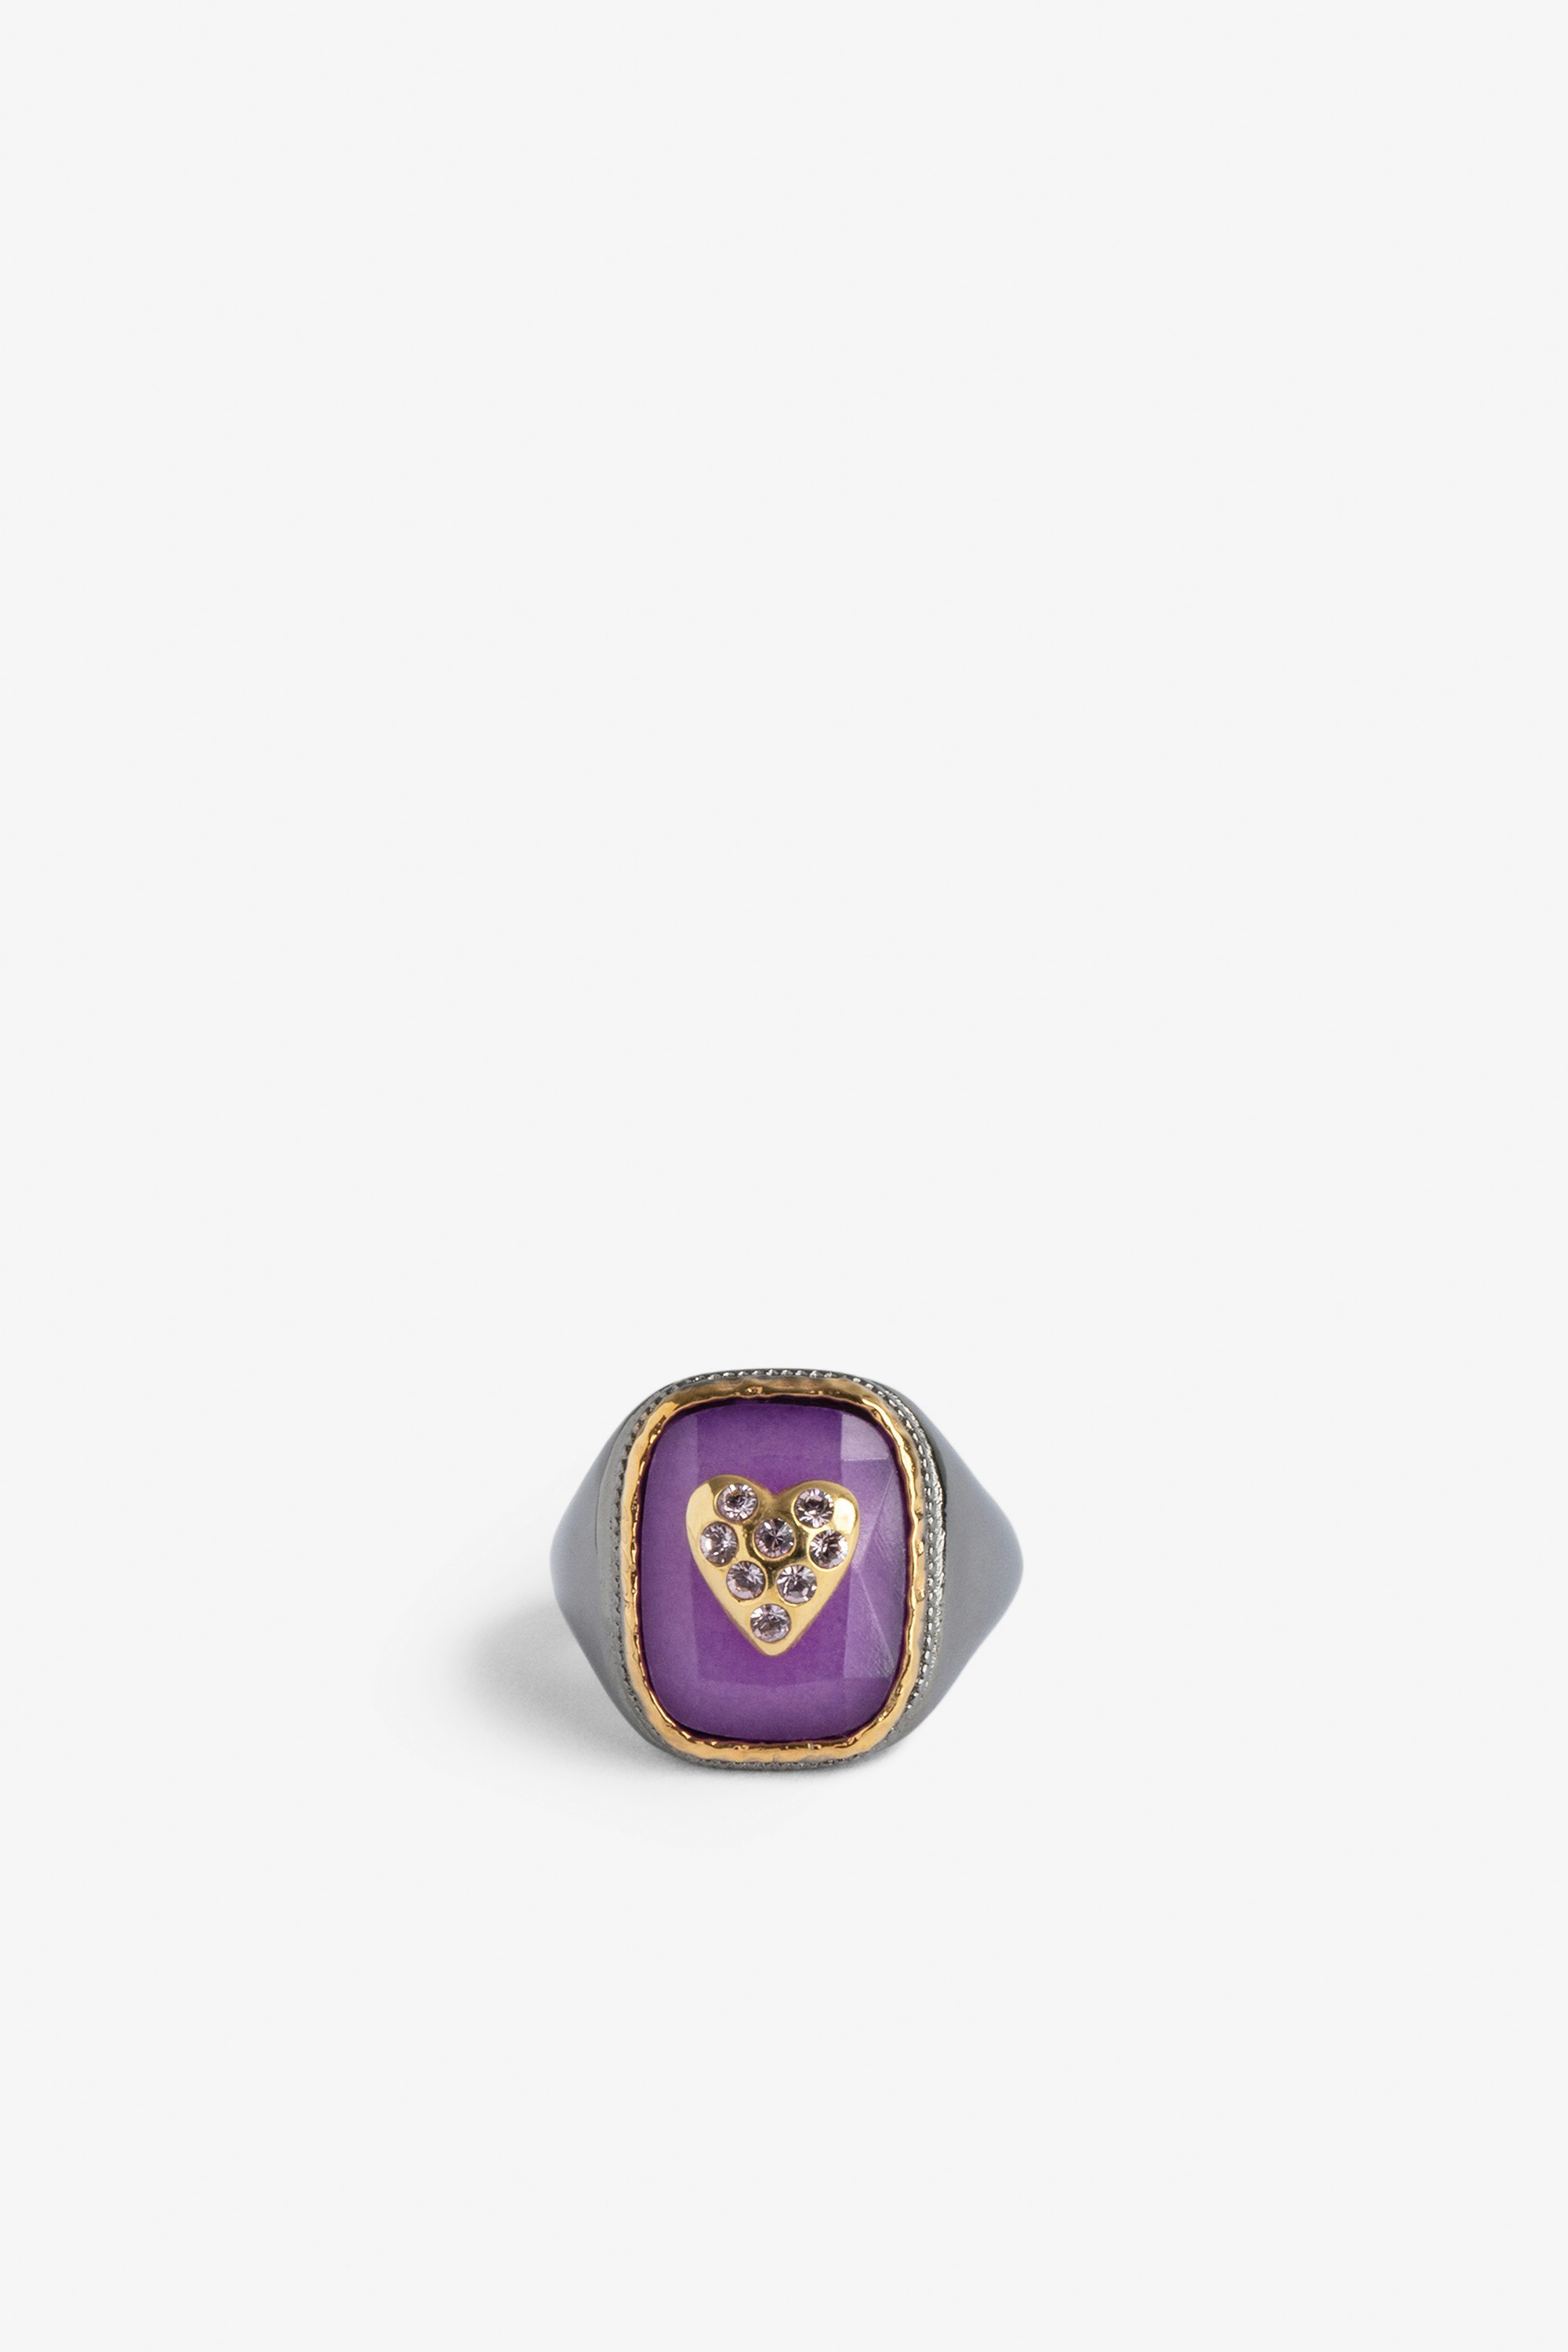 Siegelring Heart Siegelring mit einem violetten Stein, besetzt mit einem Herz aus goldfarbenem Messing.